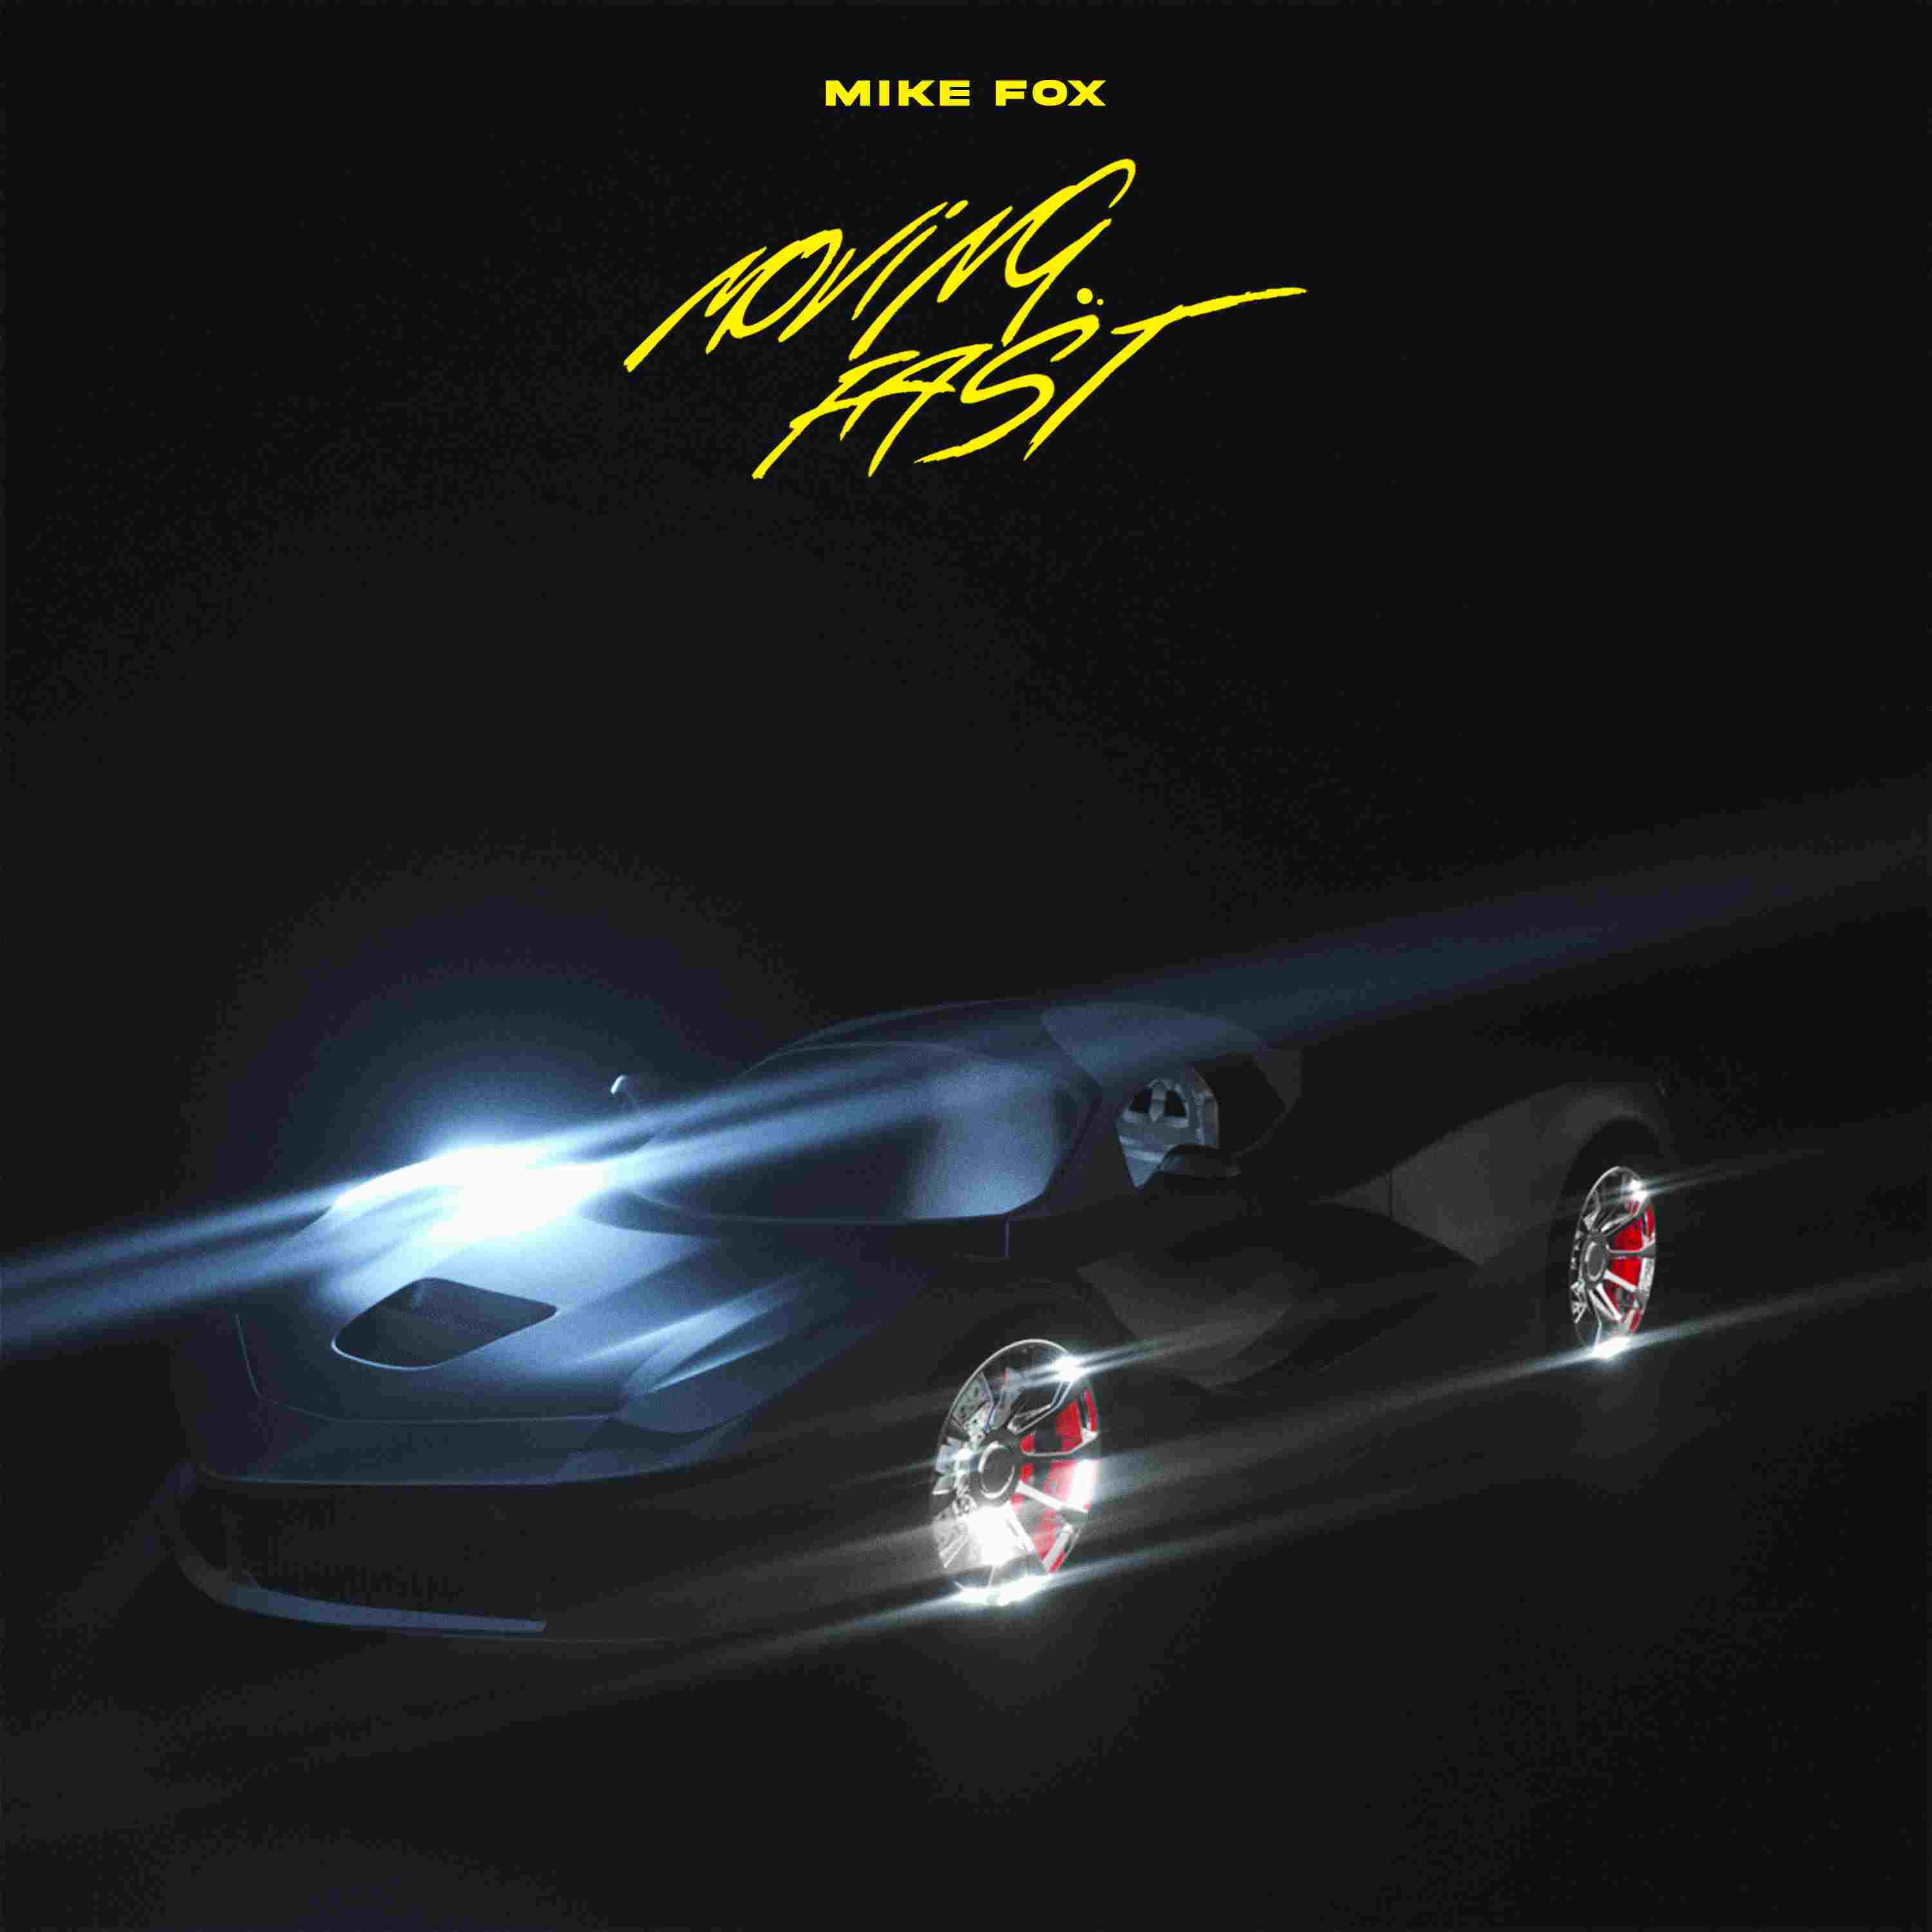 MIKE FOX, feat. Kustosza “Moving fast” è il nuovo singolo del rapper romagnolo